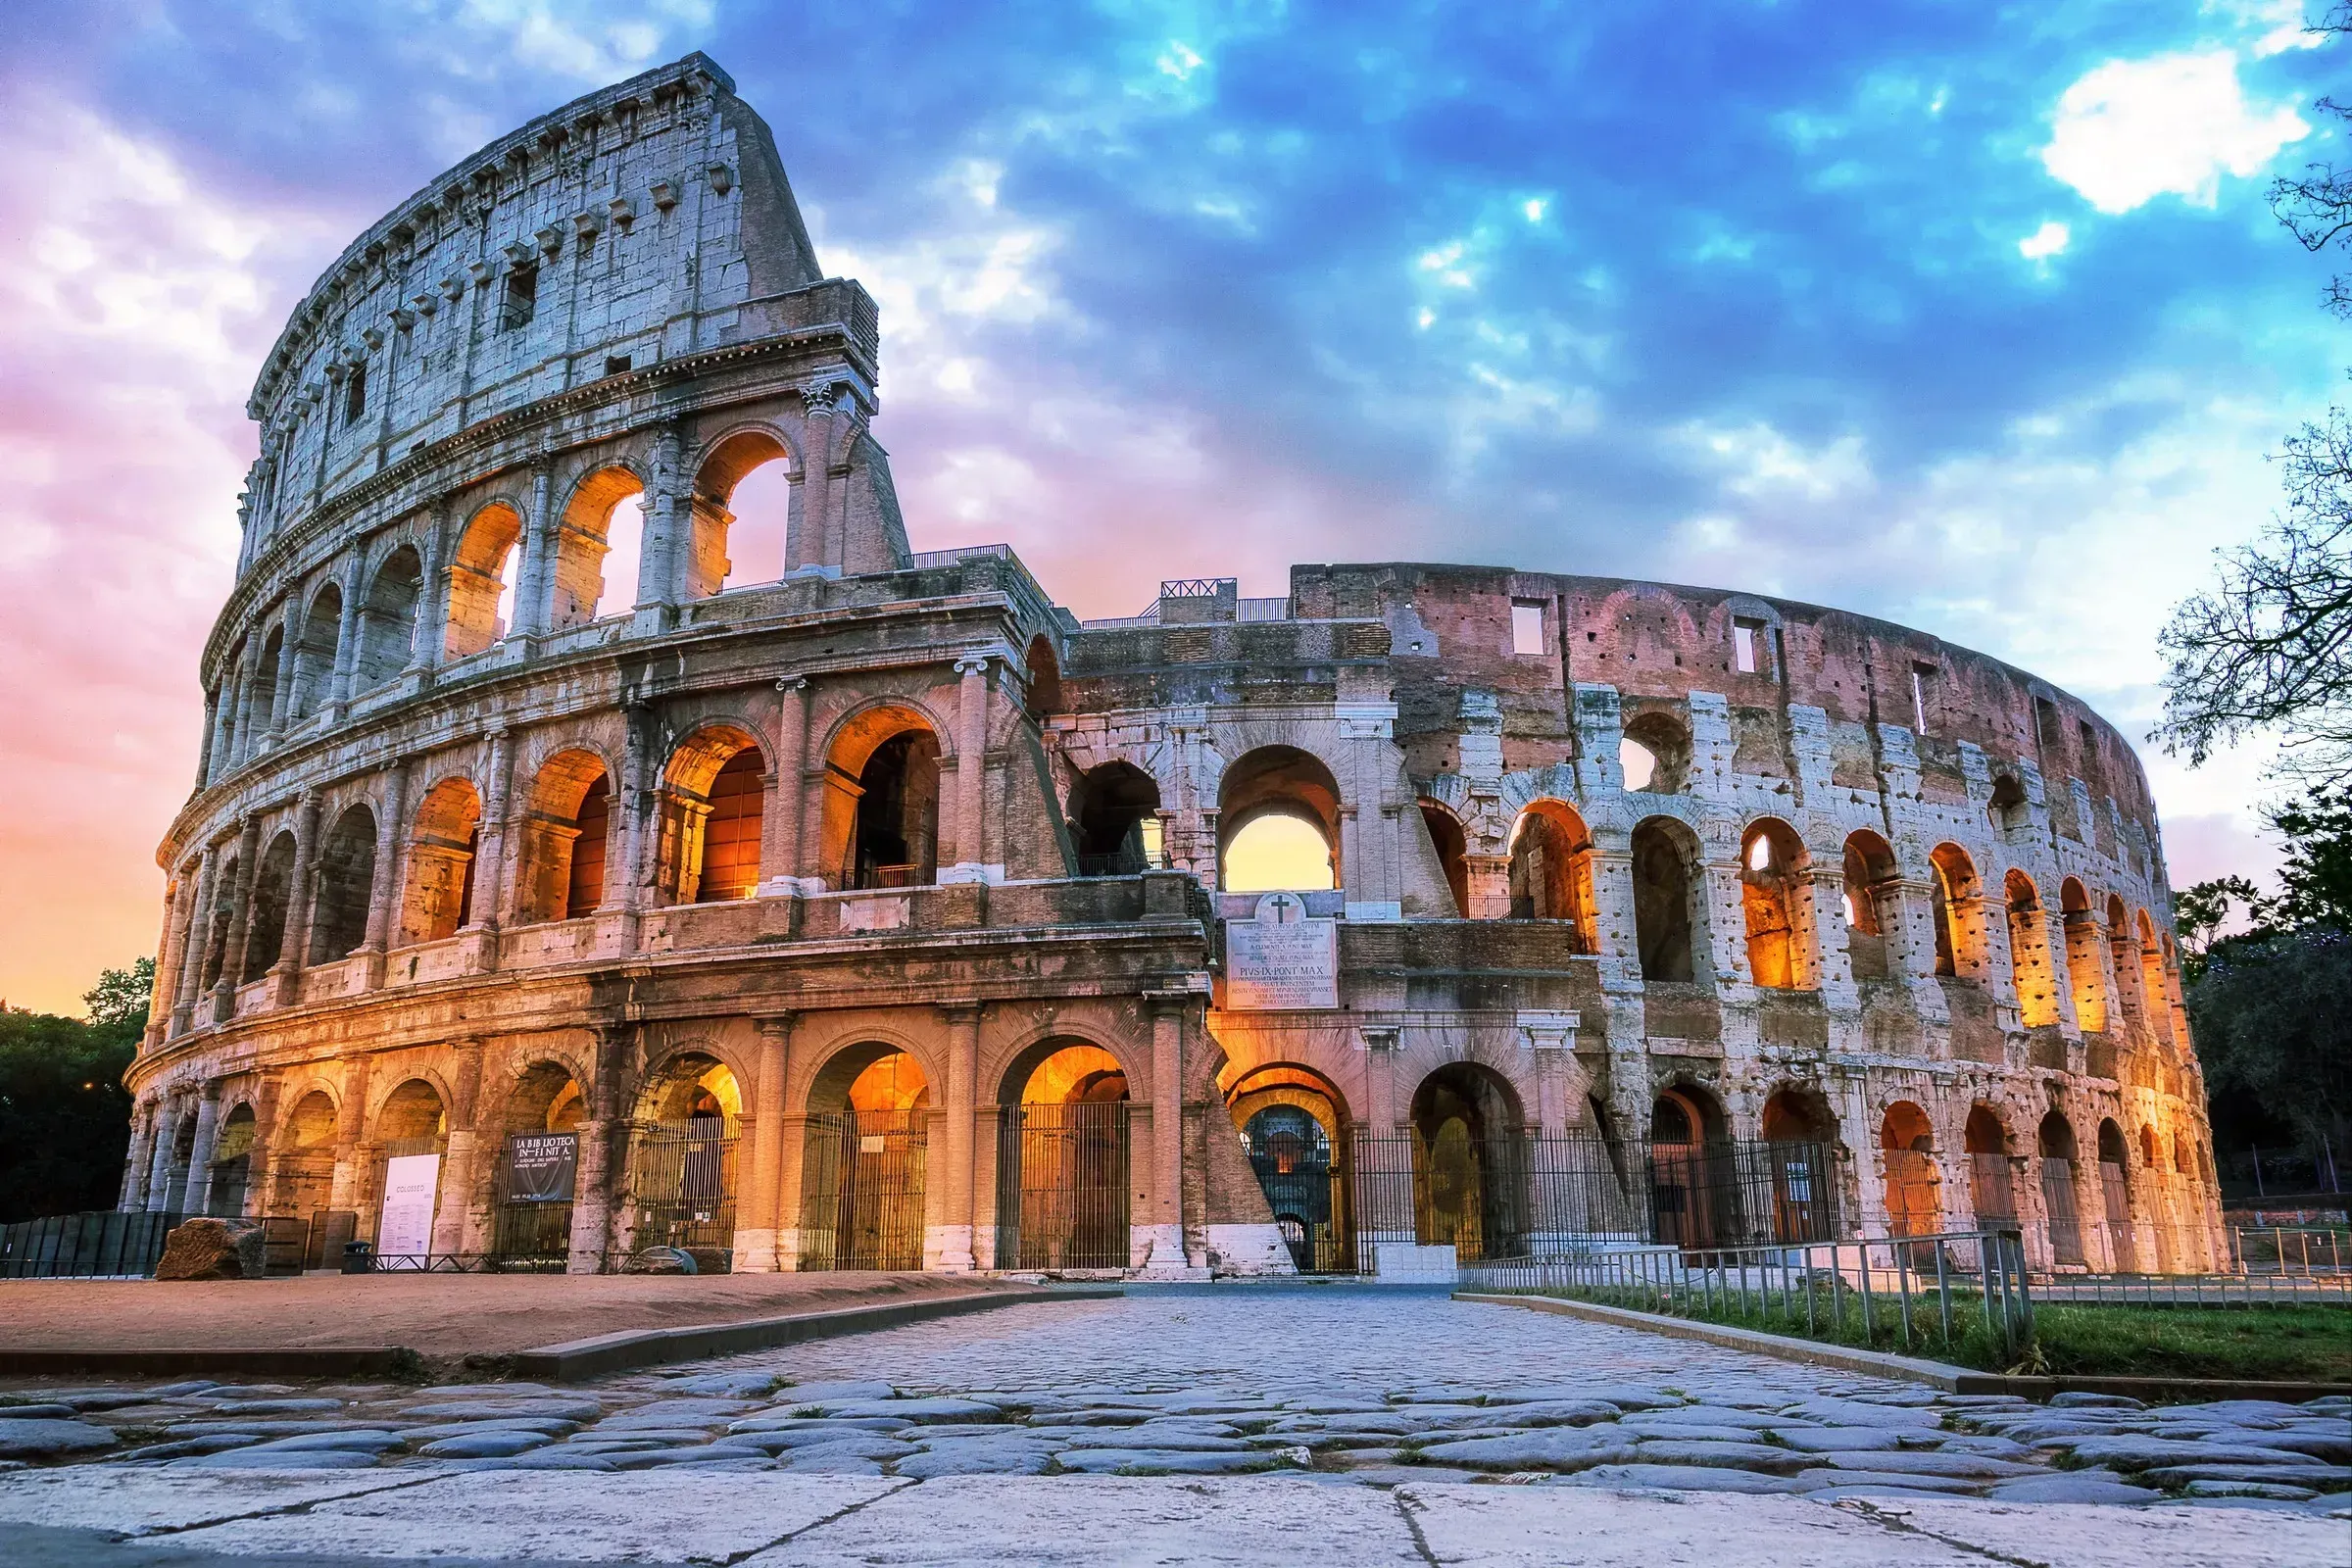 Excursão ao Coliseu e ao Fórum Romano